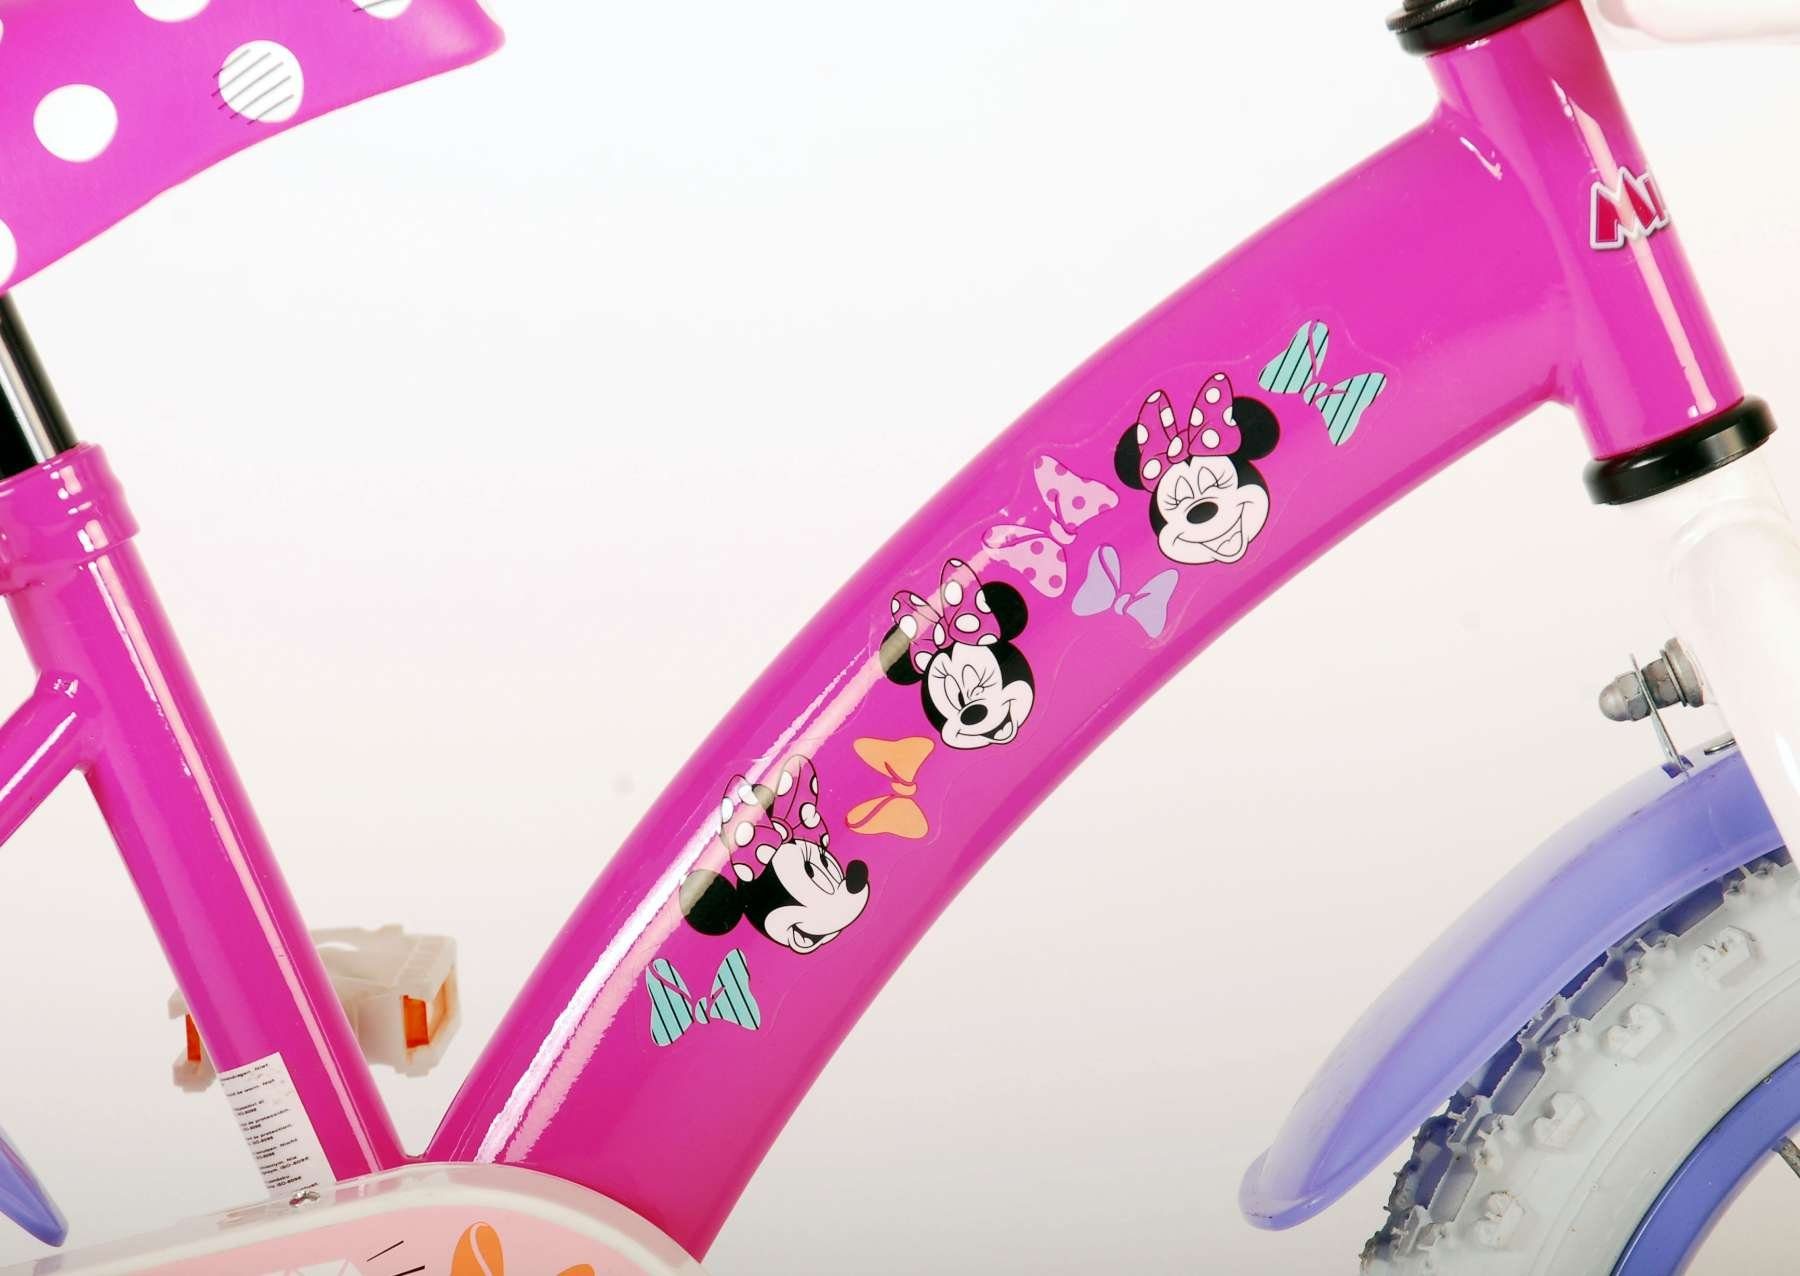 Zoll + Mädchen Kinder 1 Rücktritt - Minnie mit Kinderrad 14 Stützräder Laufrad Kinderfahrrad Disney Rutschfeste 14 Zoll Fahrrad mit Handbremse, Sicherheitsgriffe), Fahrrad TPFSports (Mädchen Gang,